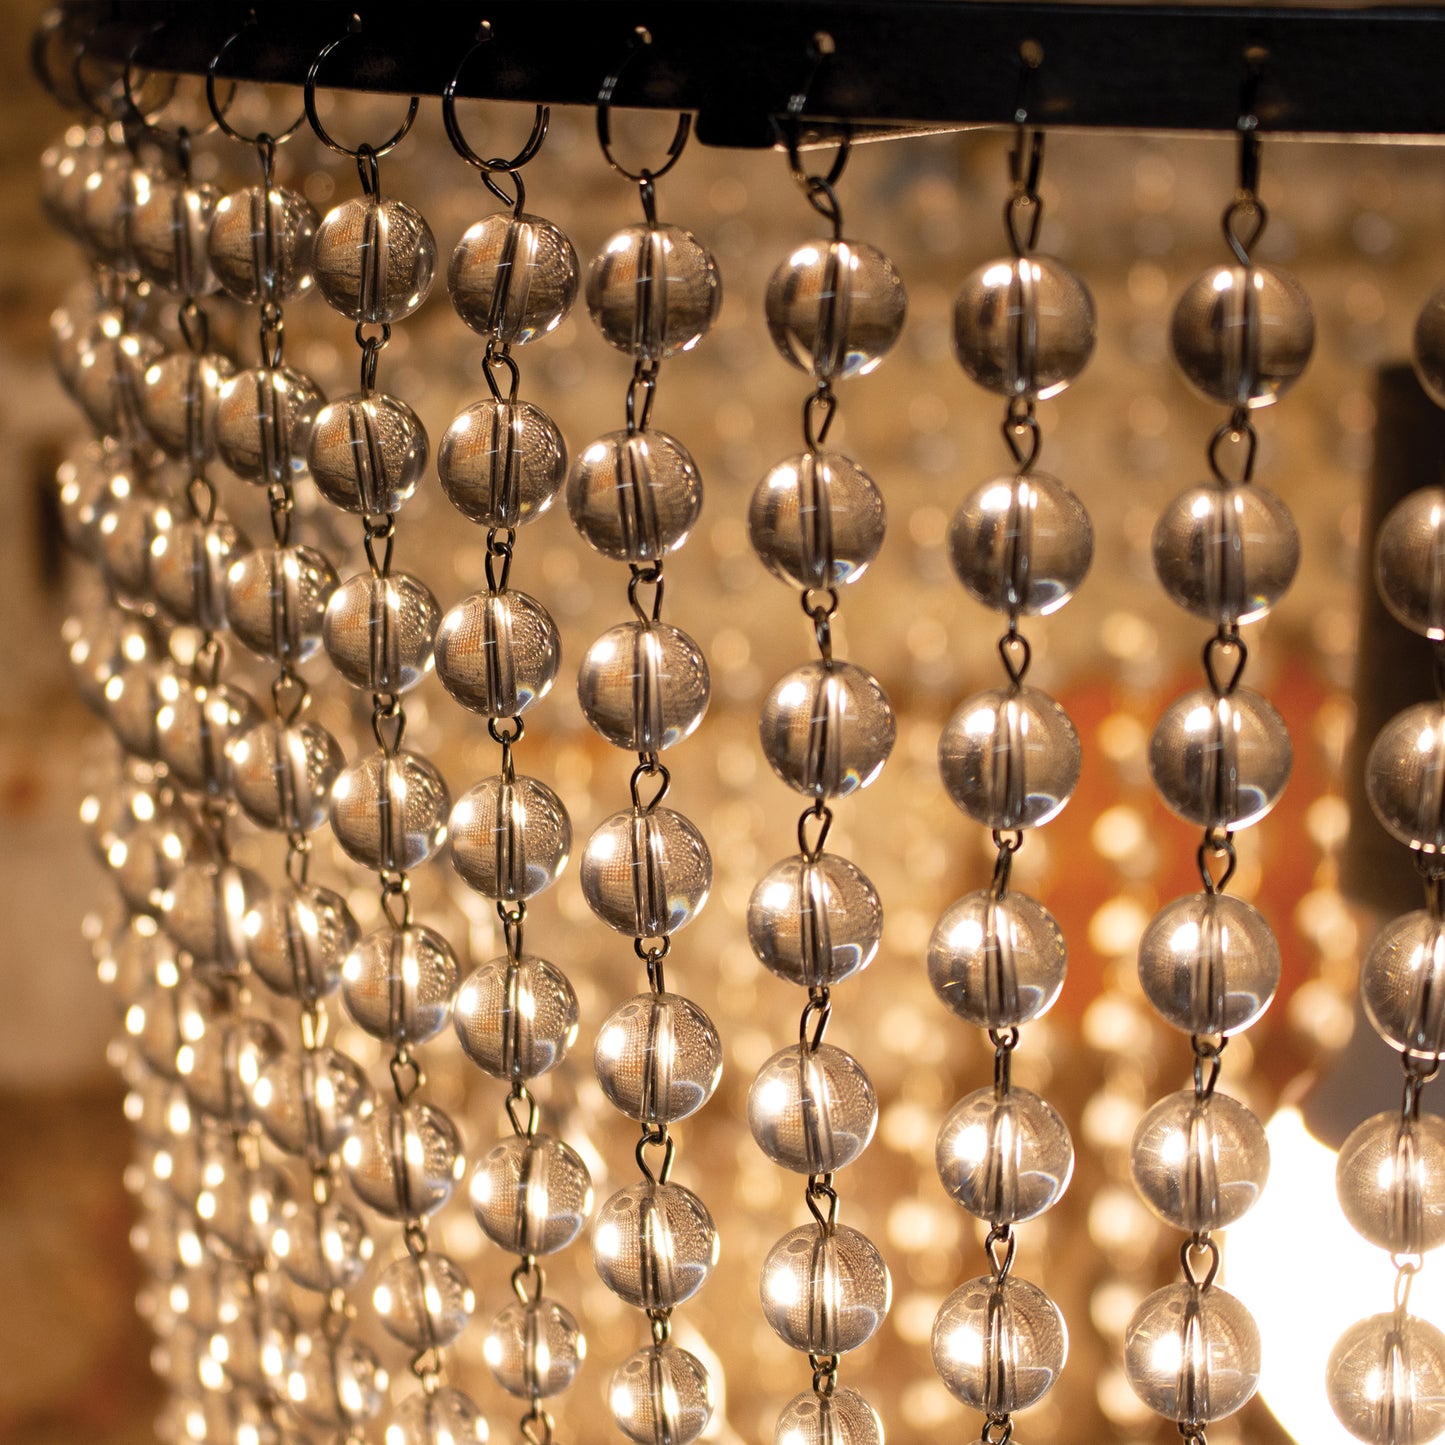 Glass Bead Pendant Ceiling Light chandelier